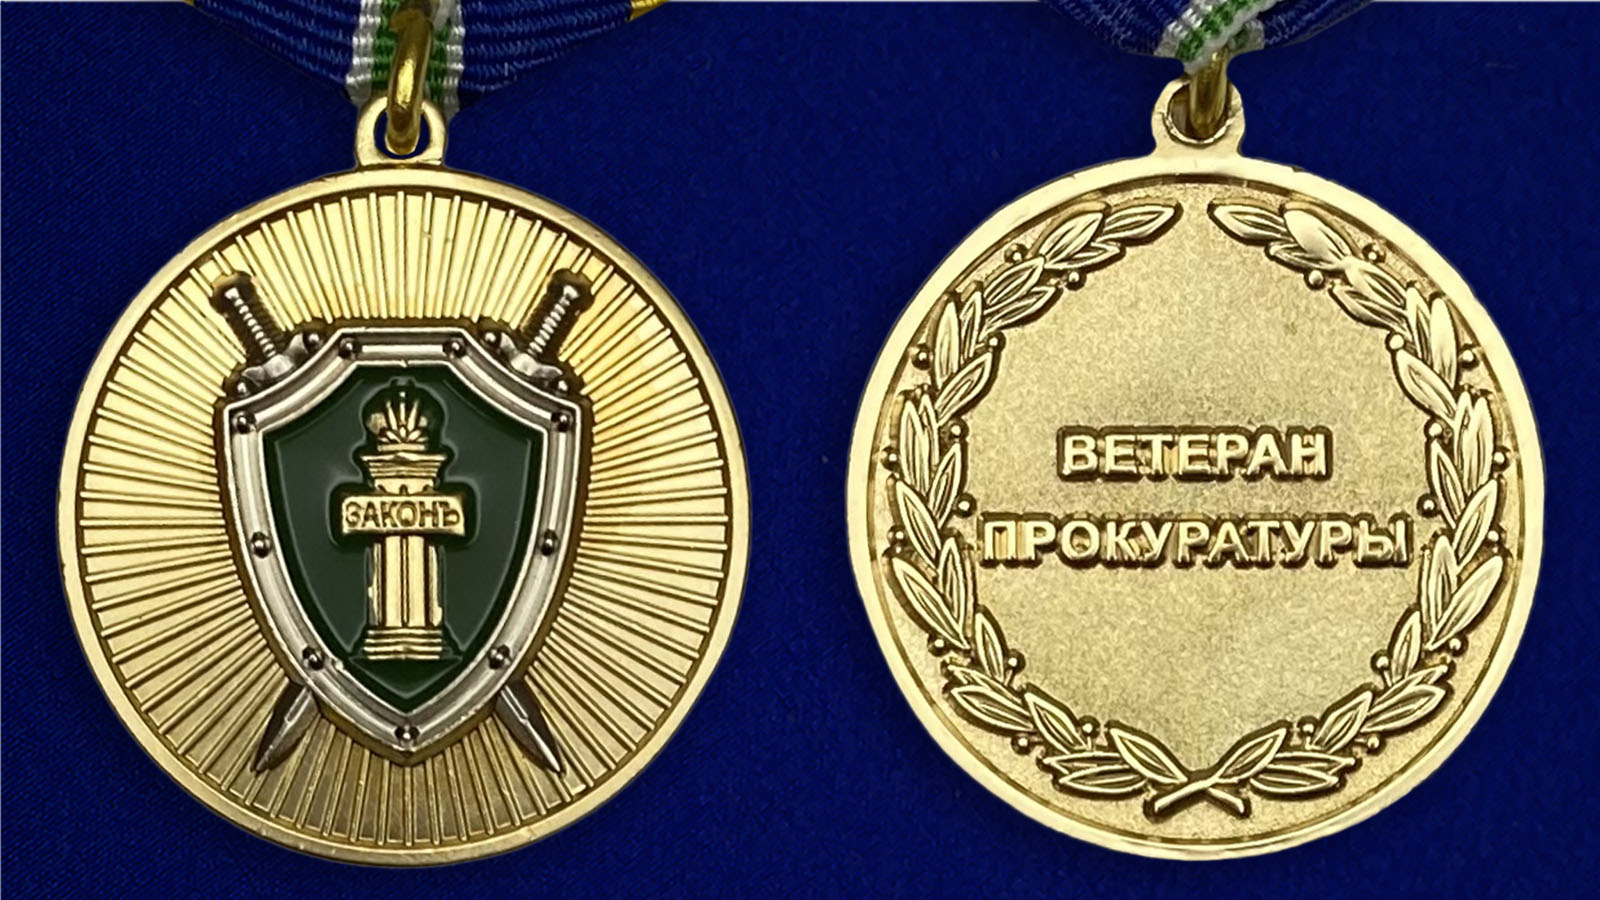 Описание медали "Ветеран прокуратуры" - аверс и реверс